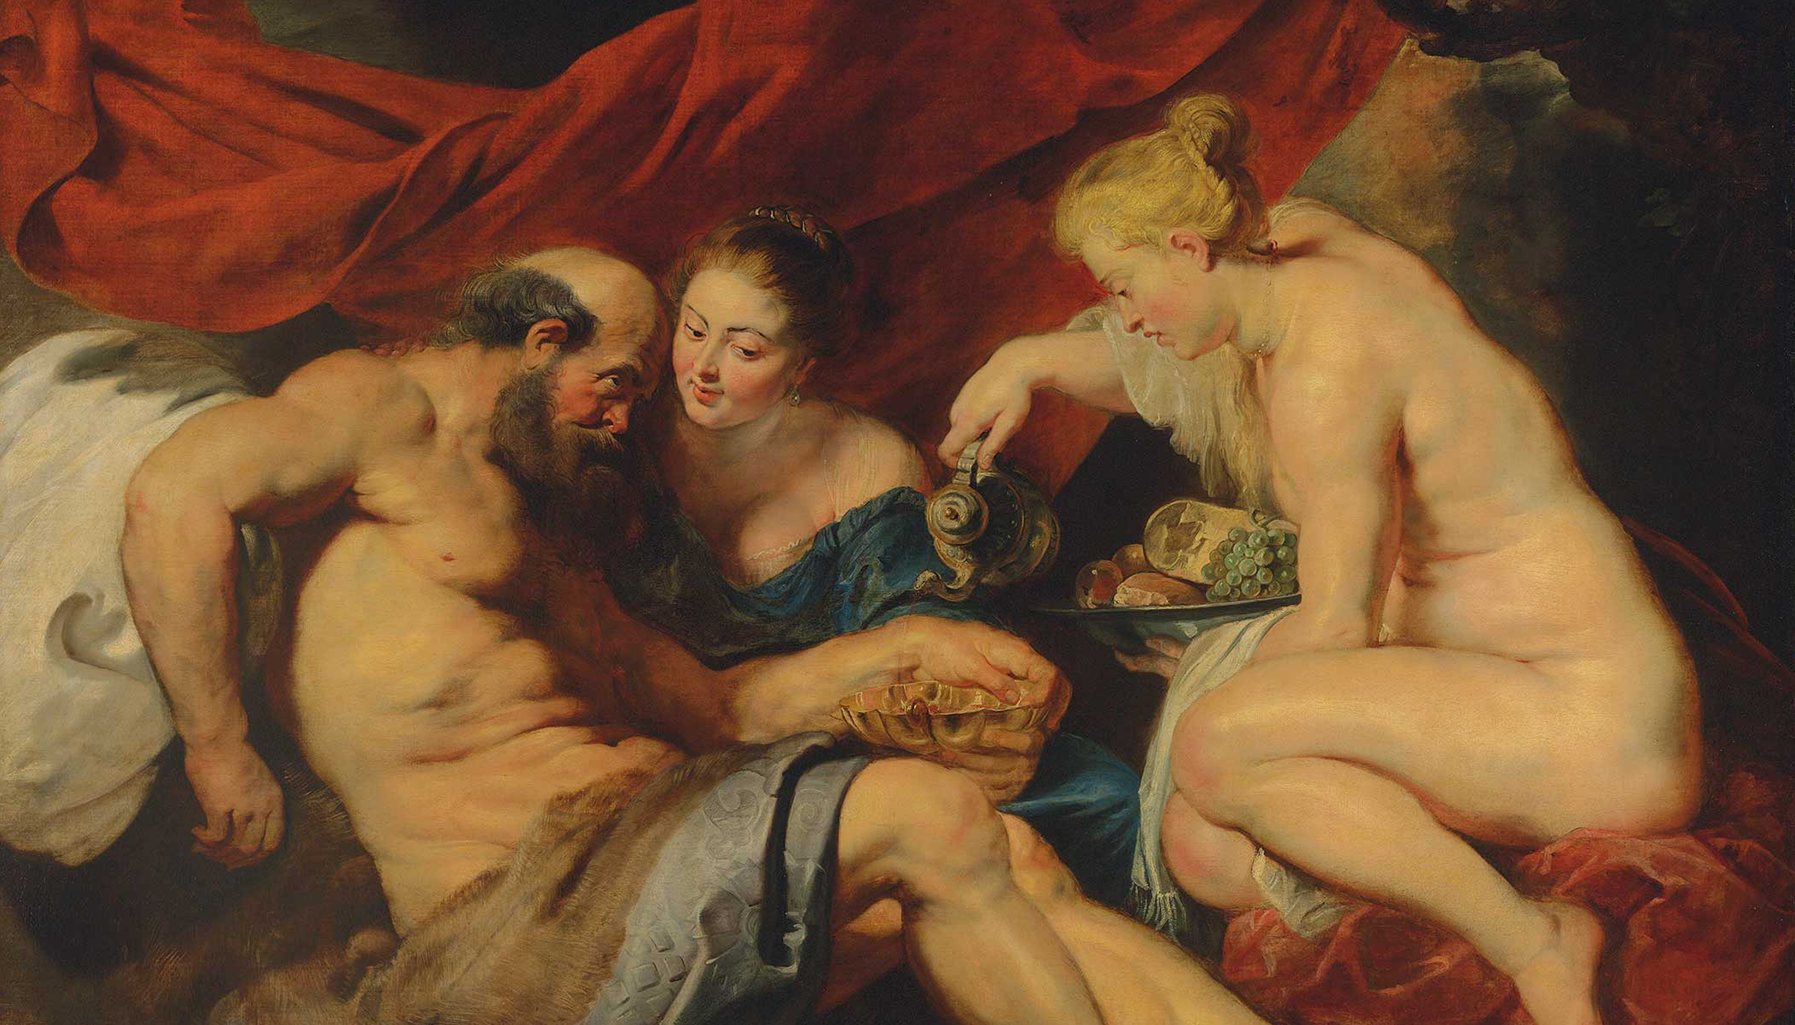 Lot & his daughters của Rubens đạt mức giá bán kỷ lục